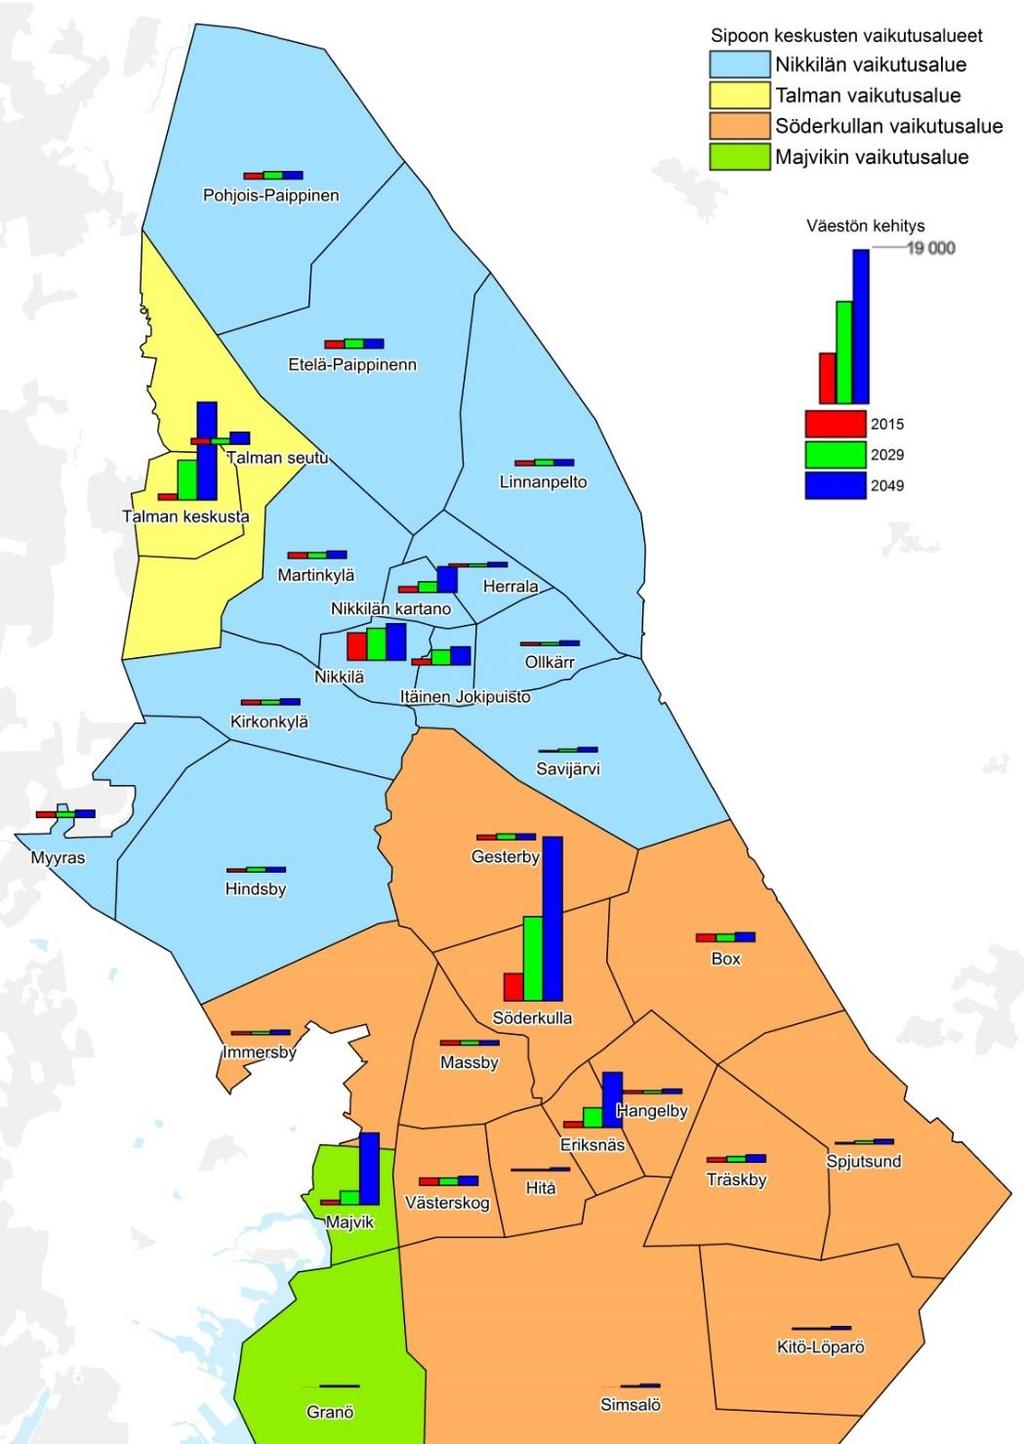 Östersundomin alueella on vireillä yhteinen yleiskaavassa, johon kuuluu Helsingin, Vantaan ja Sipoon alueita. Koko alueen väestötavoite on 80.000-100.000 asukasta vuonna 2060.